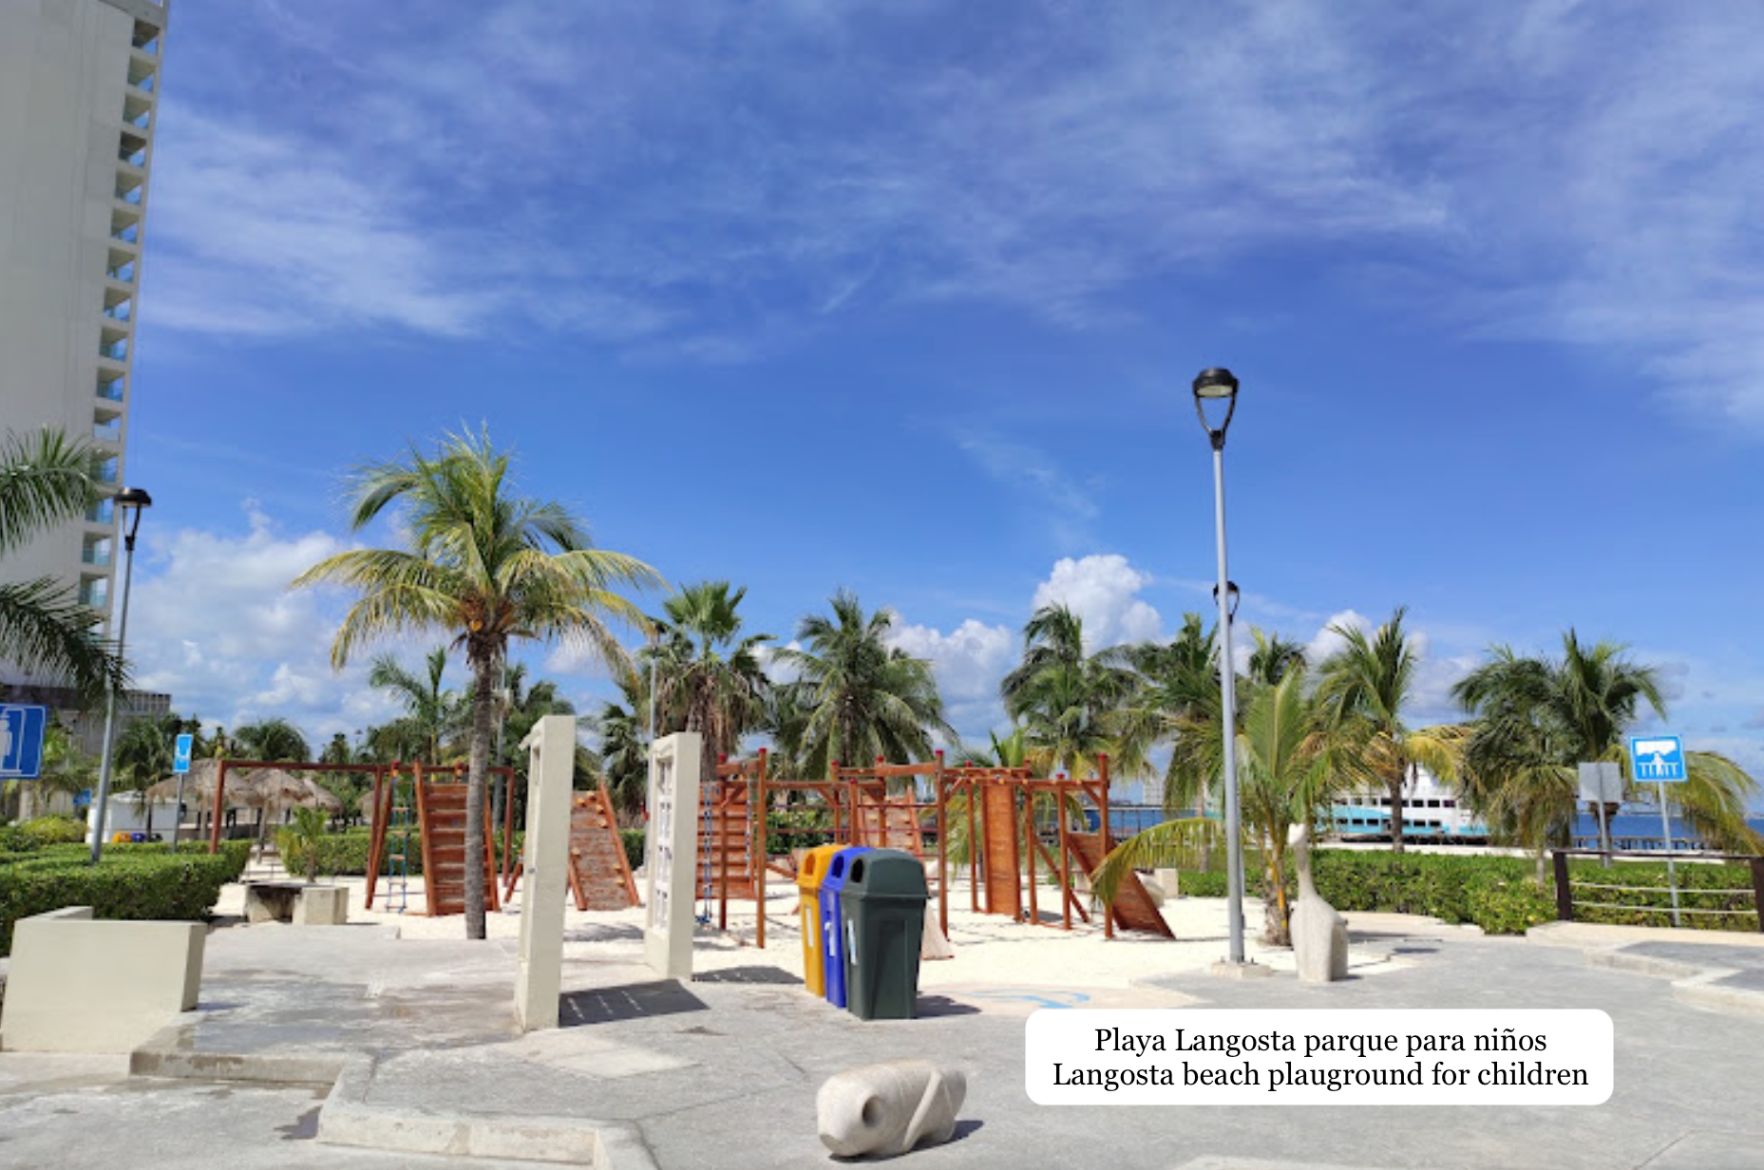 Condominio con Acceso controlado, pet garden, y lago con playa,  pre-construcción, venta, Cancun.